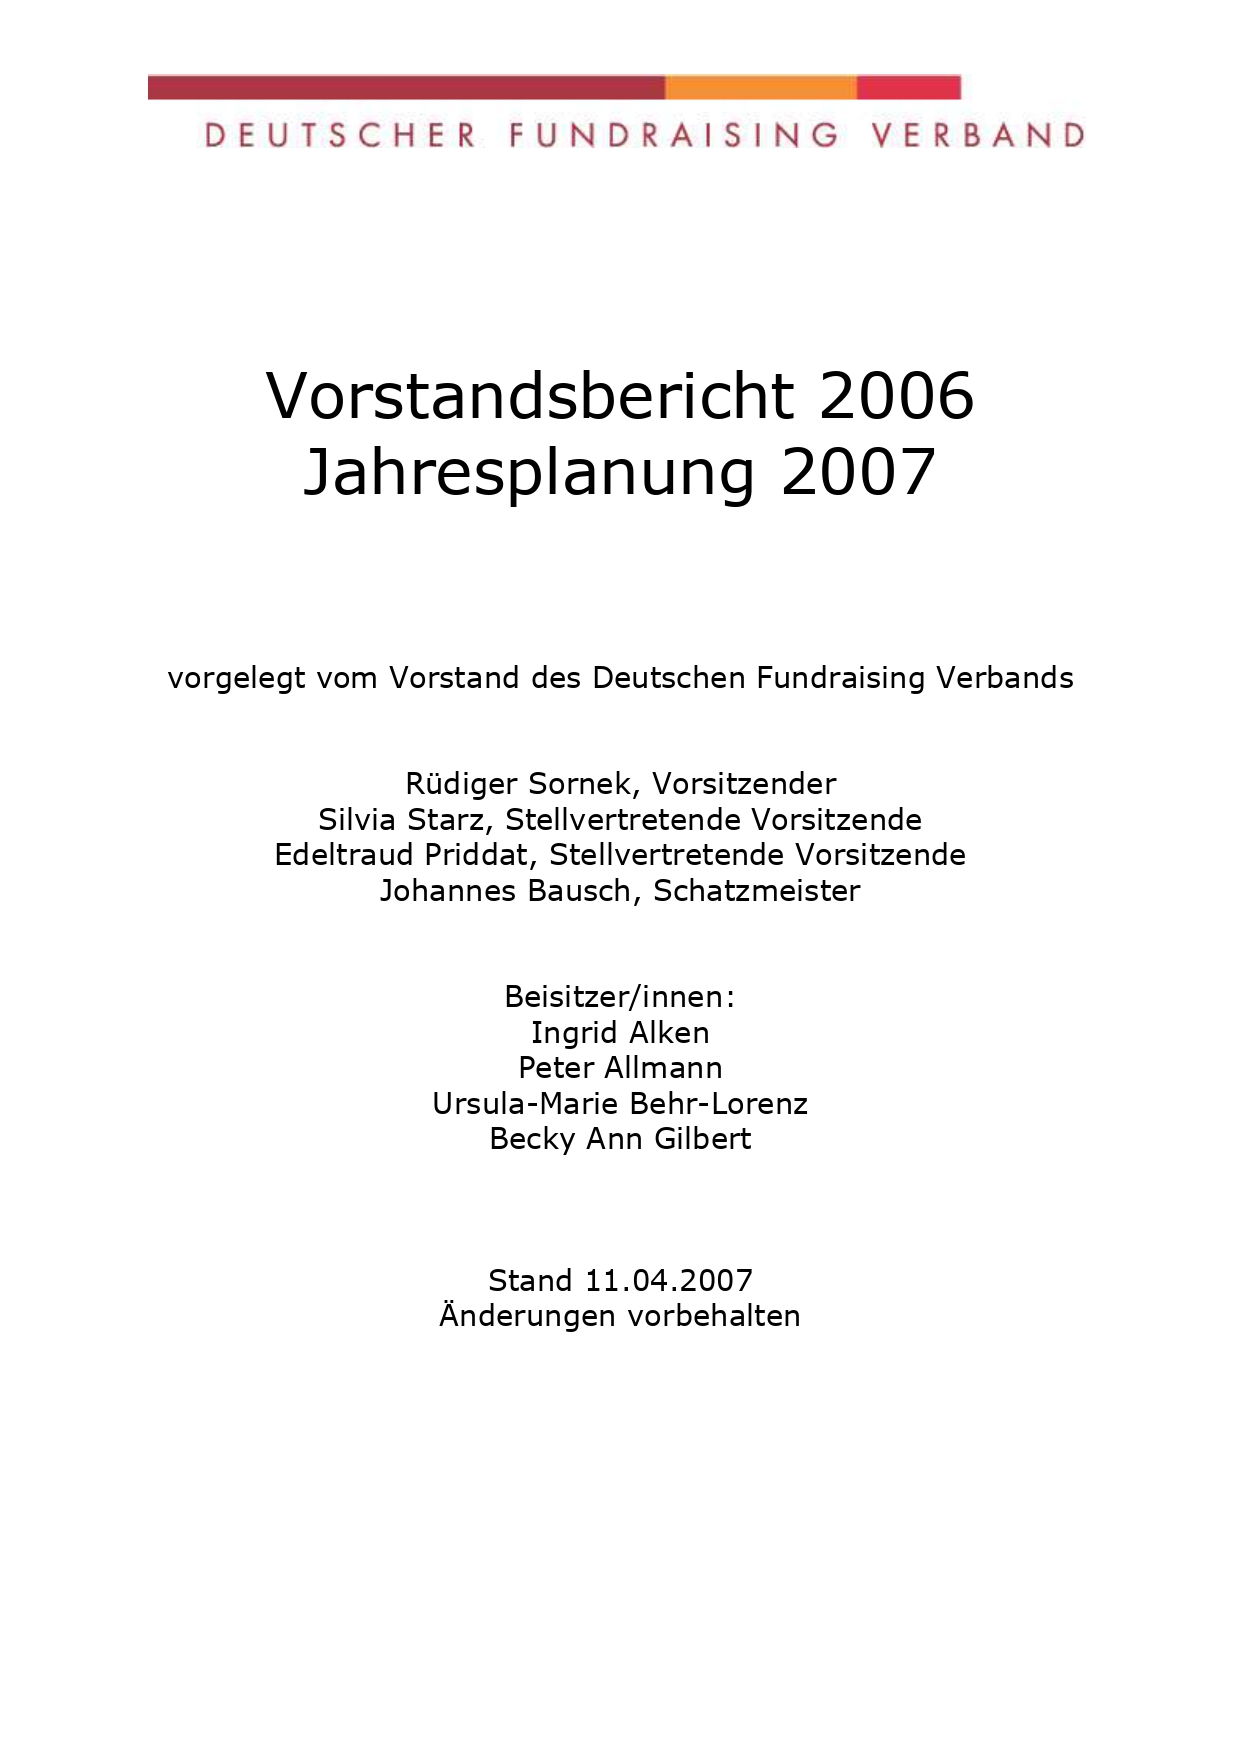 DFRV Jahresbericht 2006